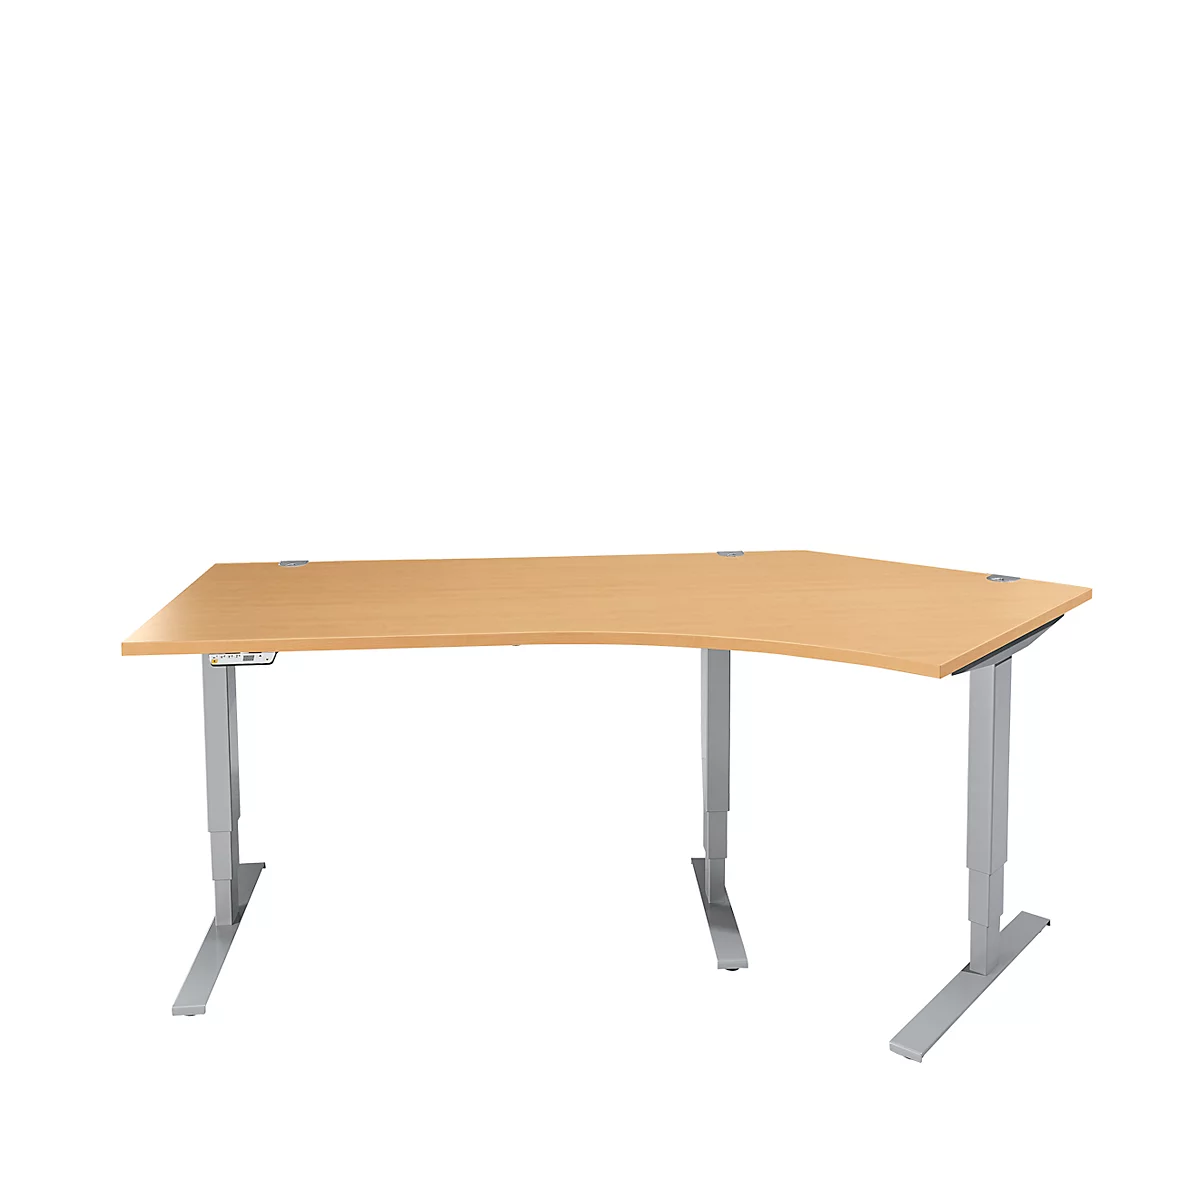 Schäfer Shop Genius AERO FLEX escritorio angular, regulable eléctricamente en altura, ángulo de 135° a la derecha, anchura 2165 mm, haya/aluminio blanco + panel de memoria